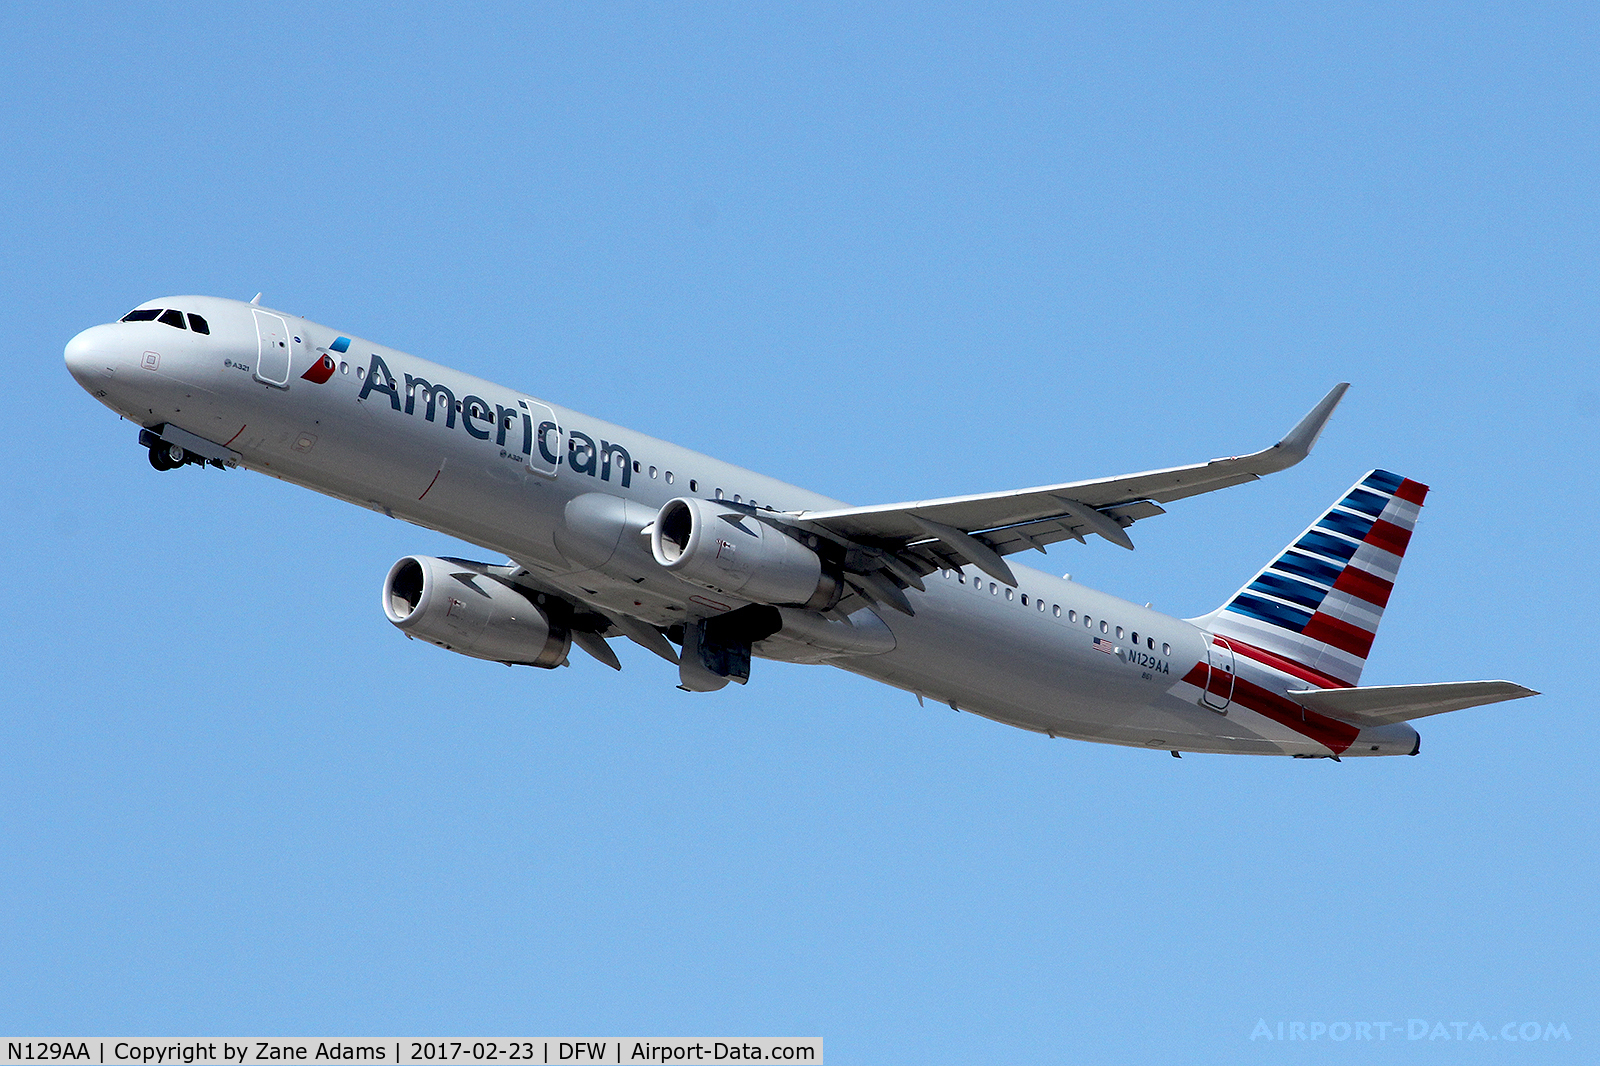 N129AA, 2014 Airbus A321-231 C/N 6401, Departing DFW Airport